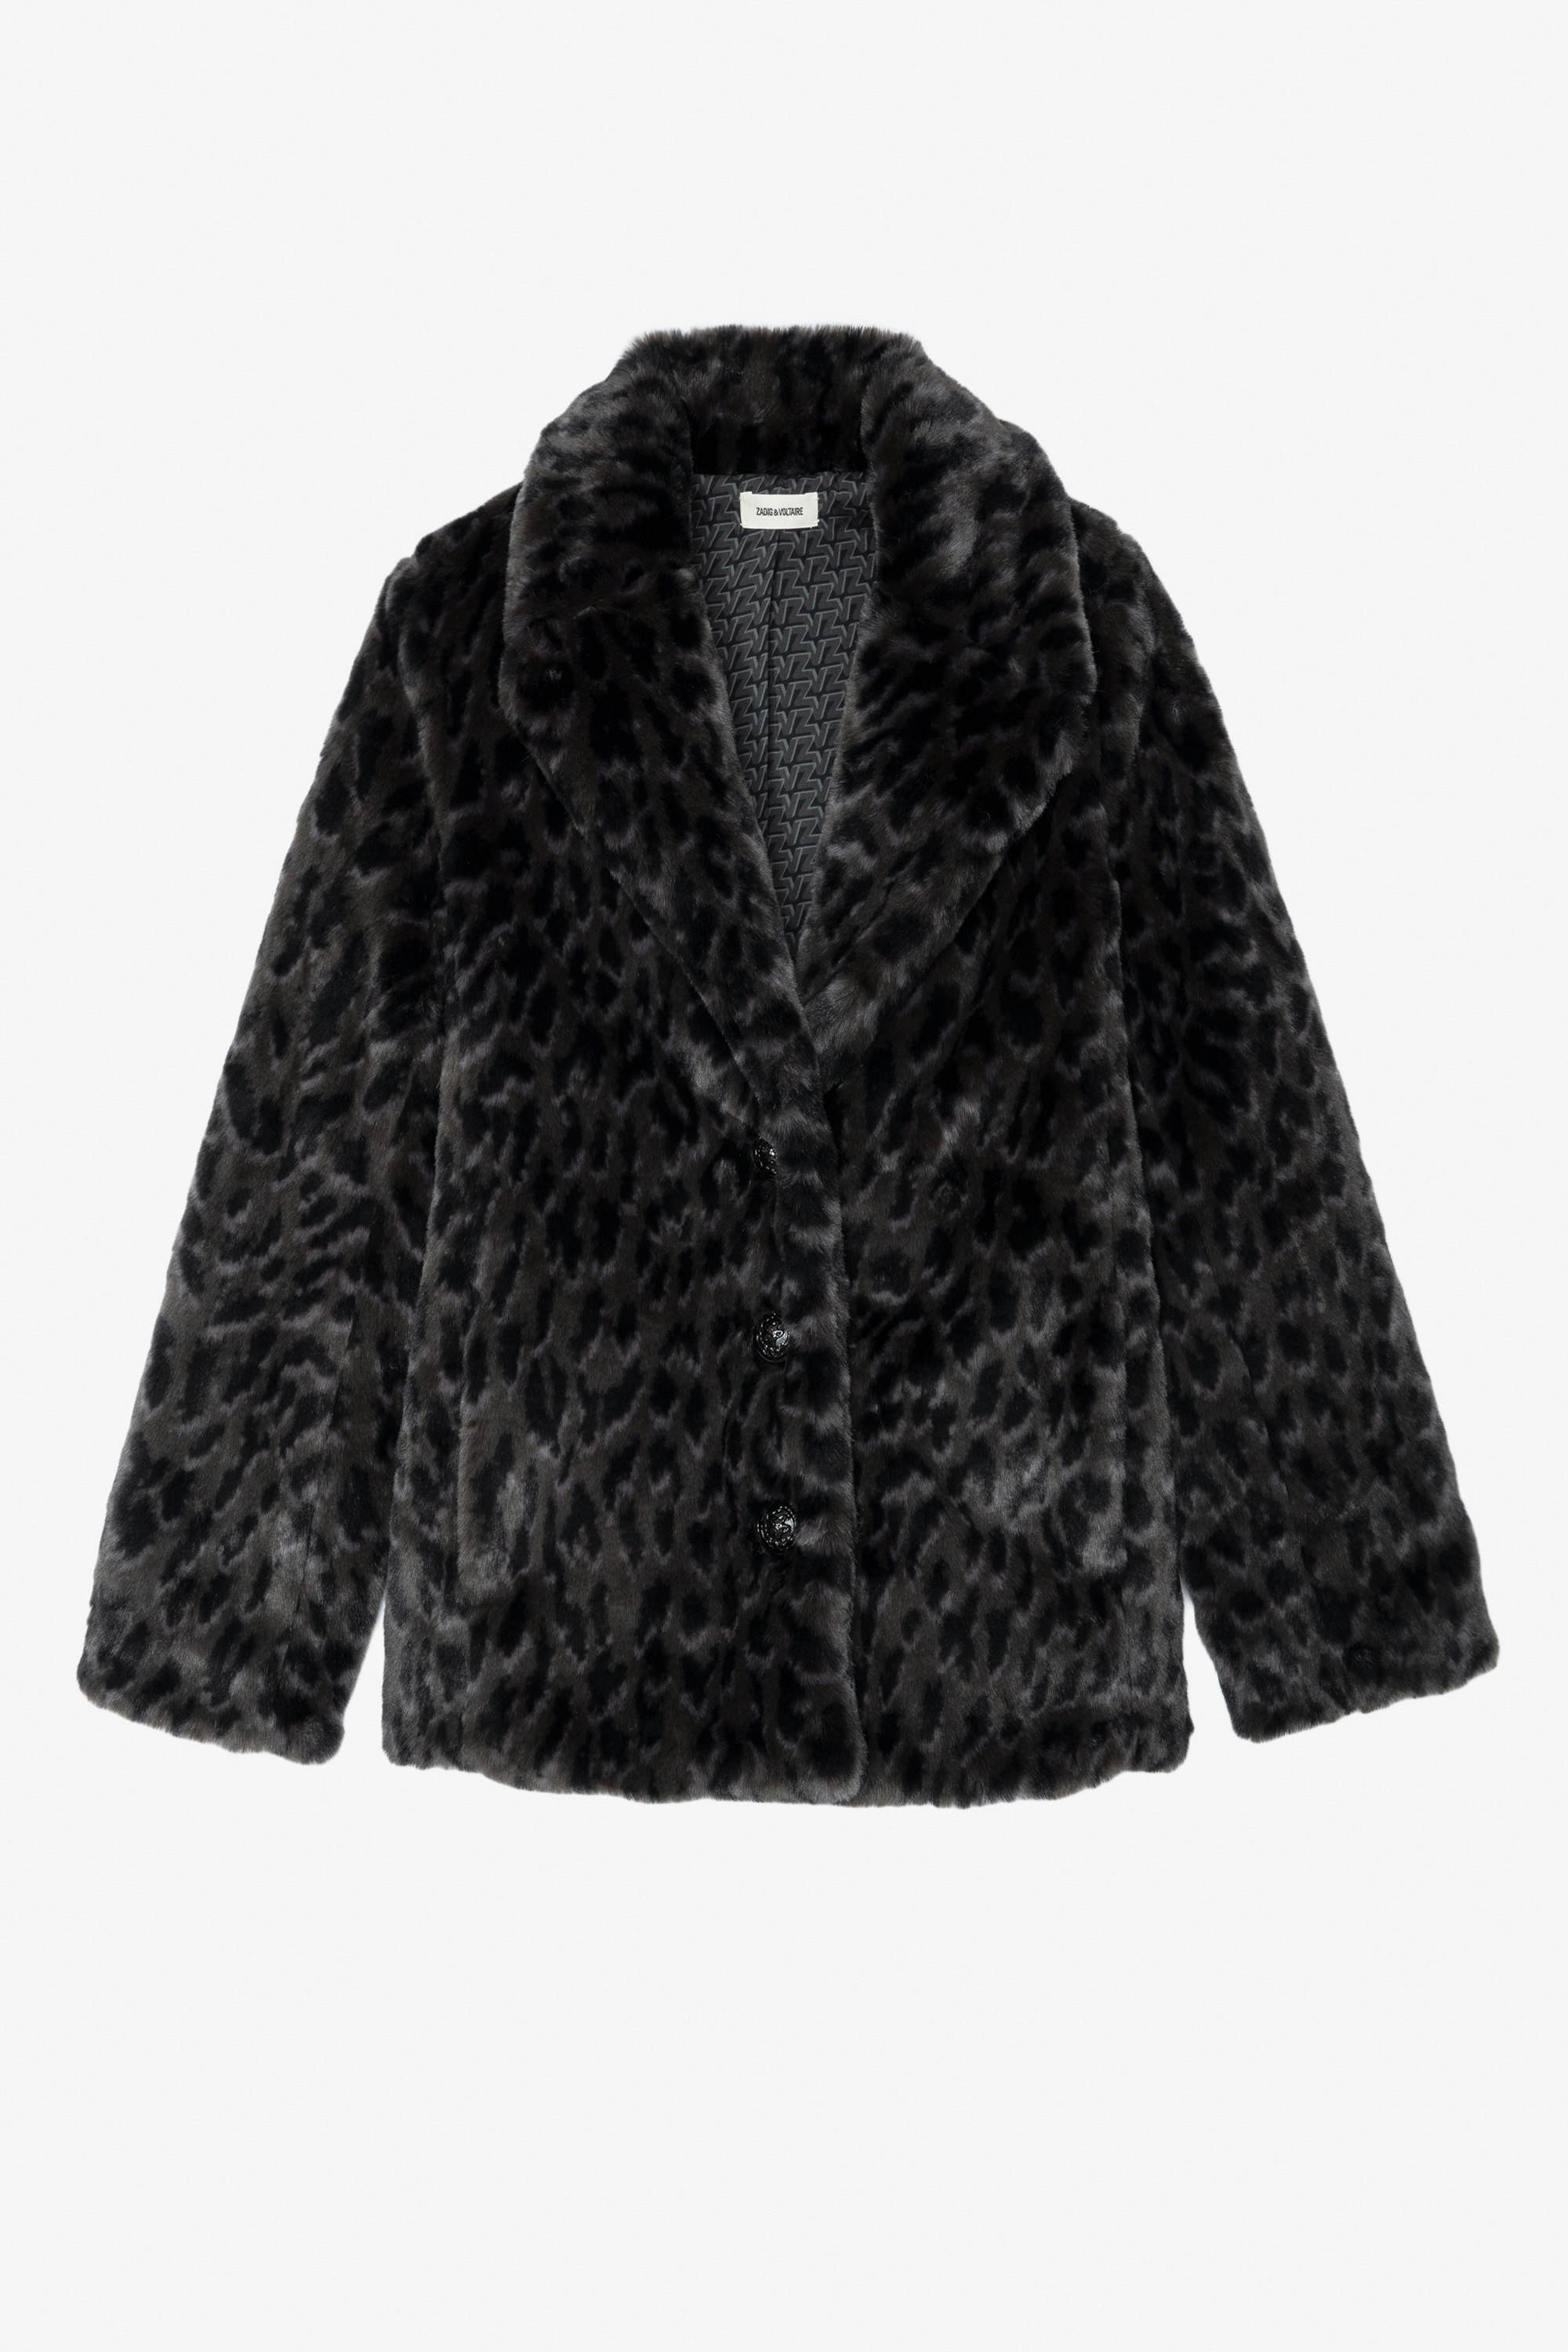 Fera Coat - Women's short faux fur coat.